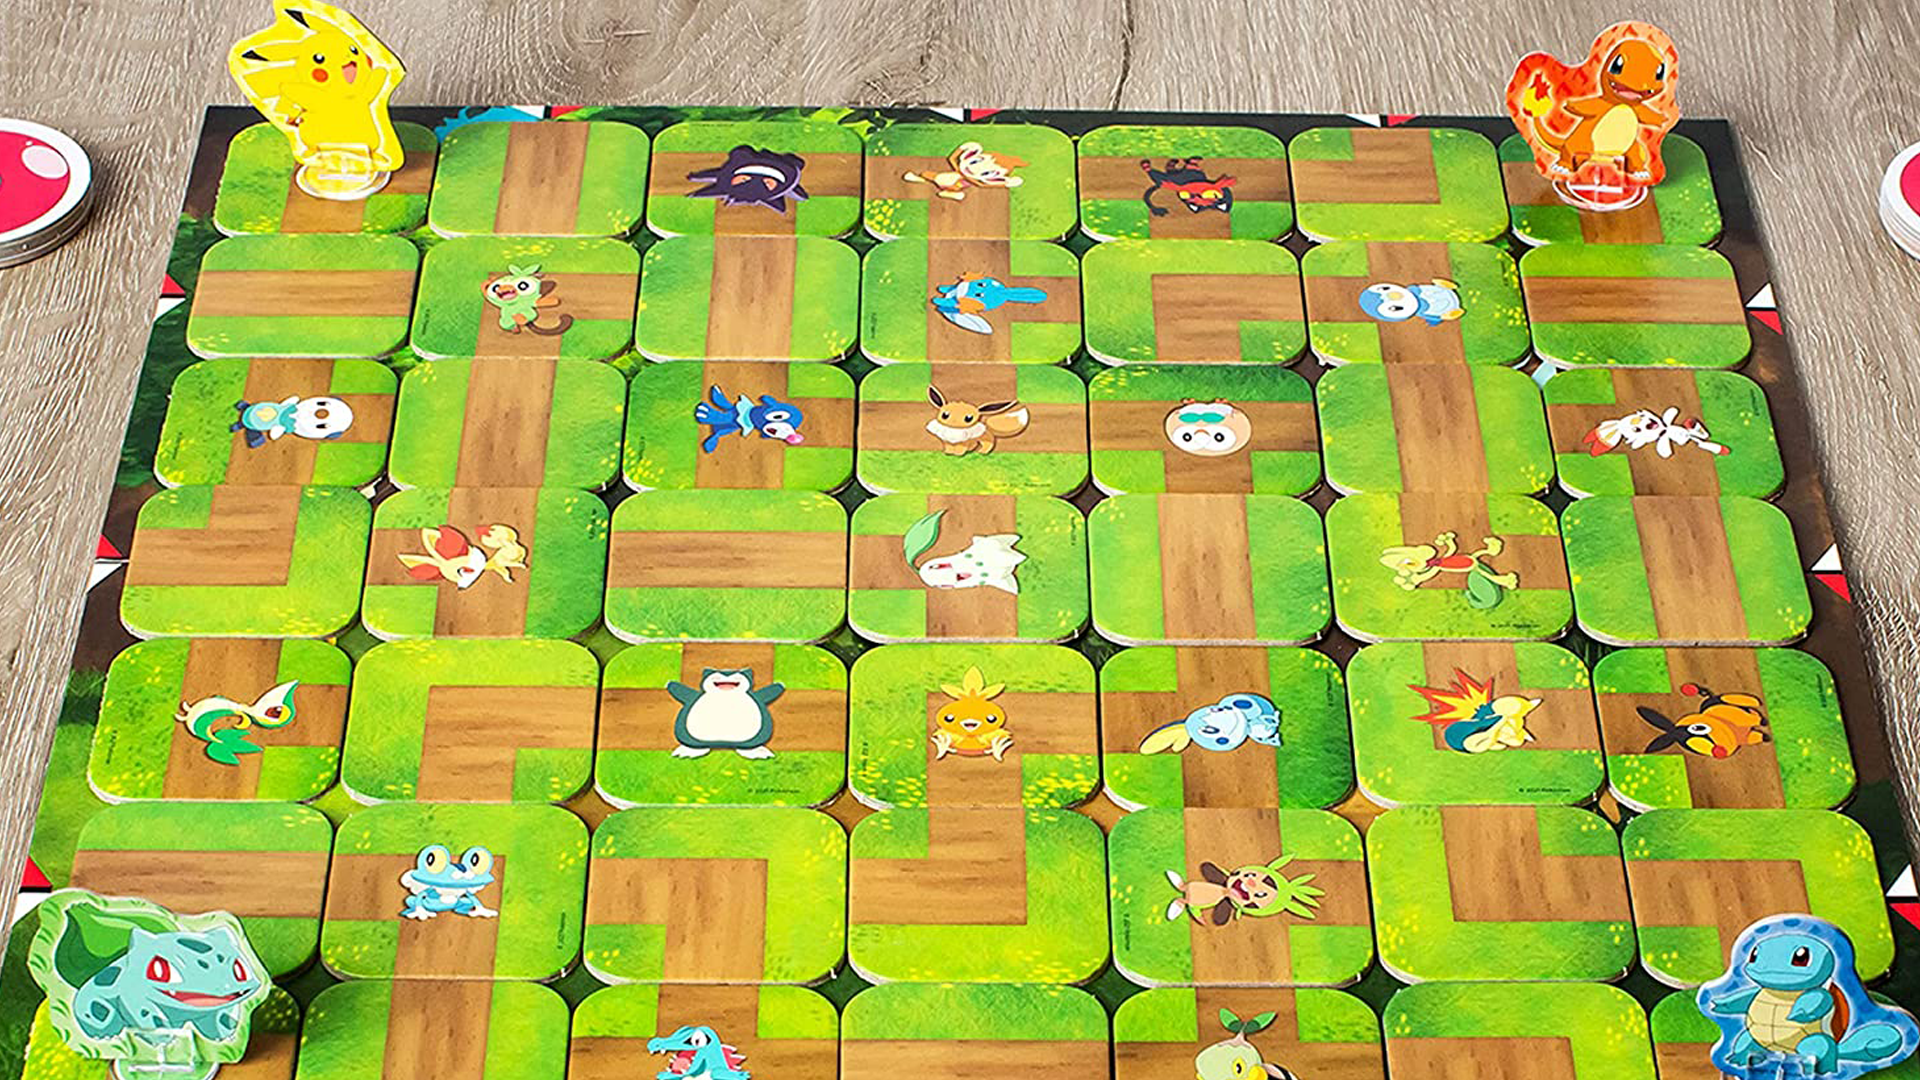 Pokémon Labyrinth layout